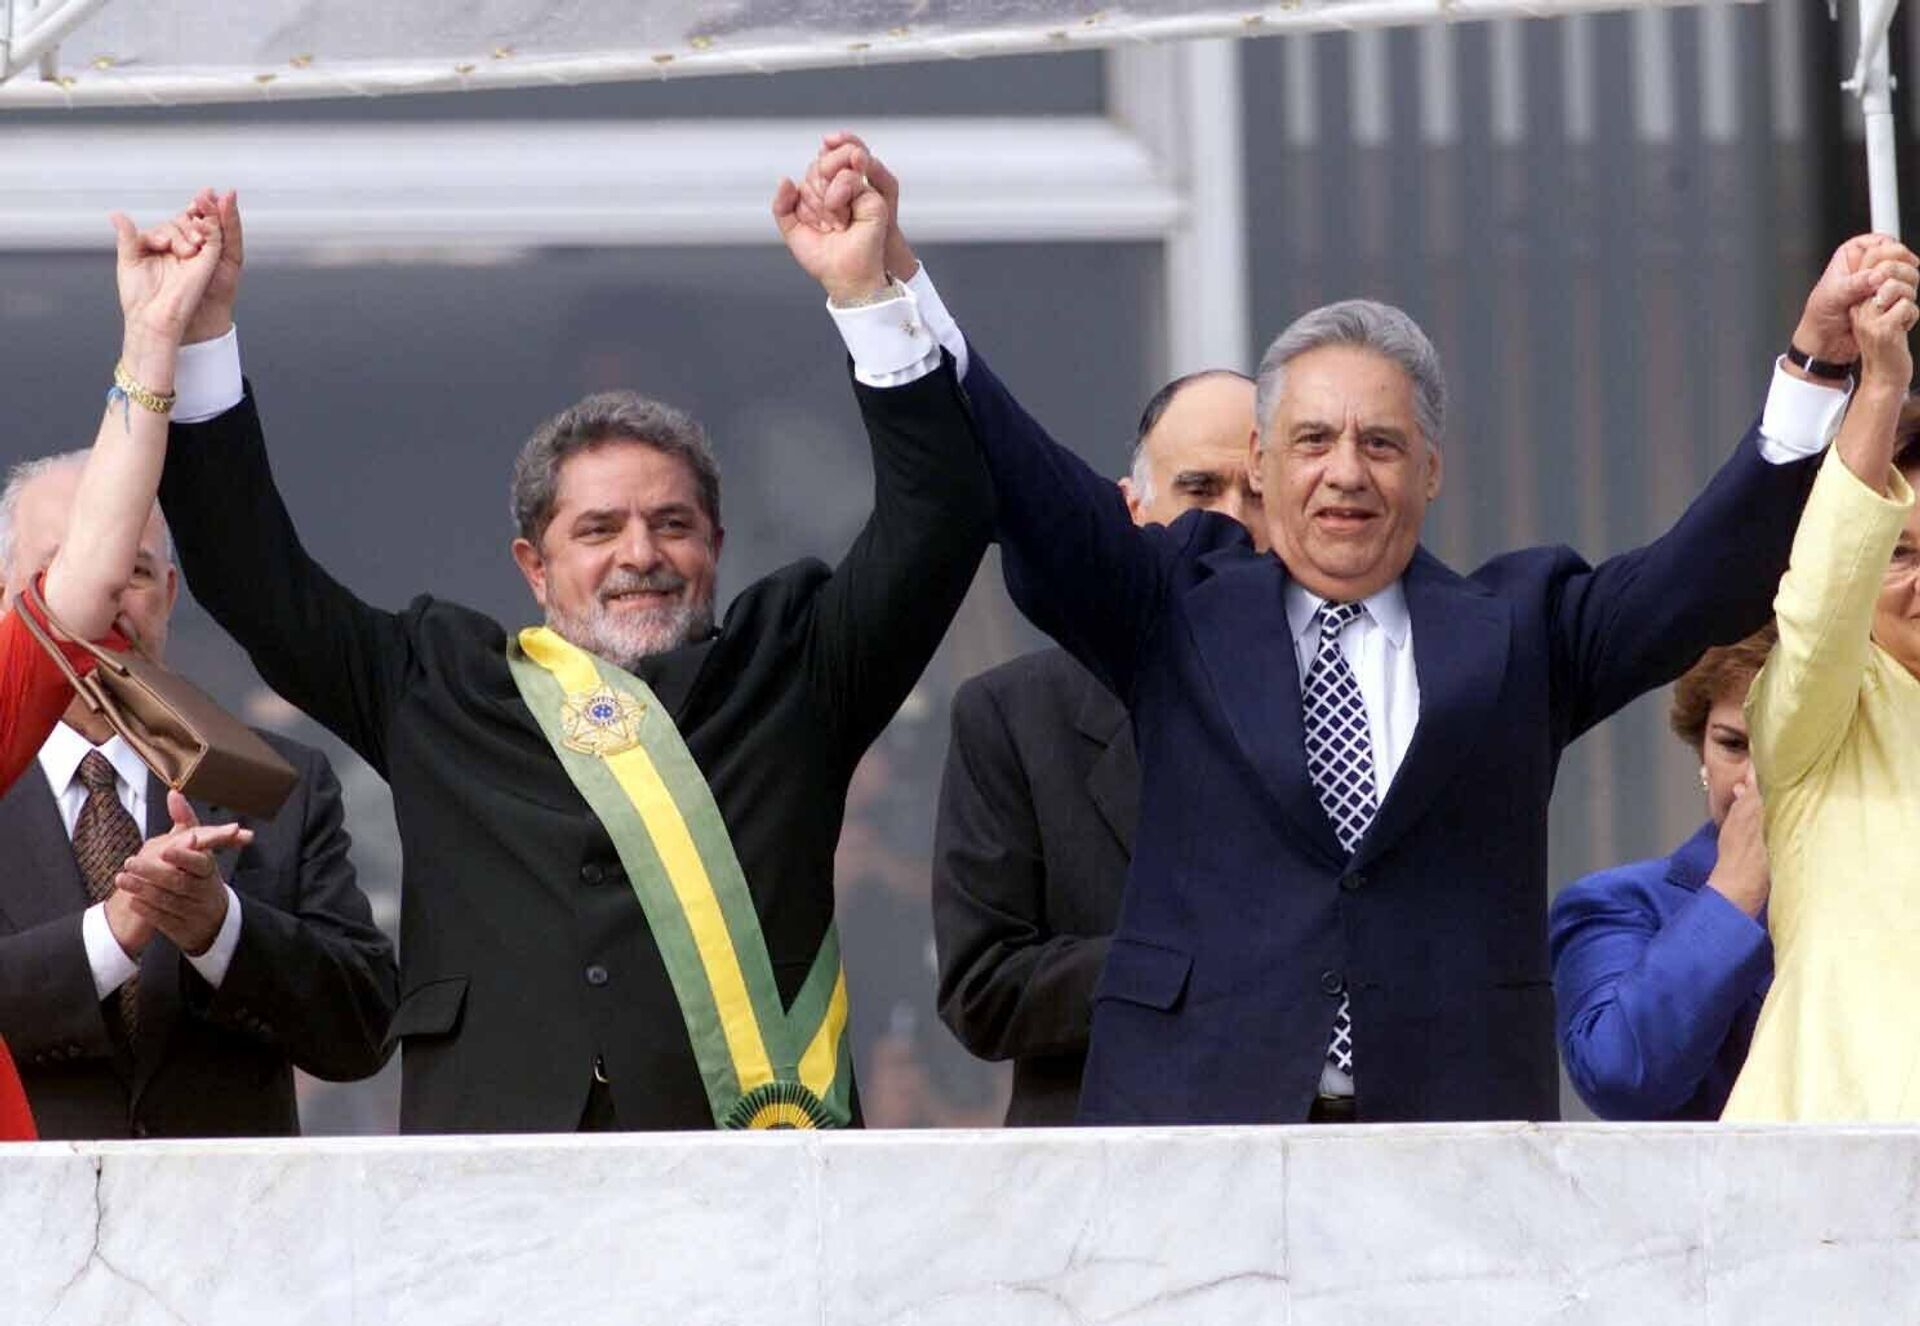 Luiz Inácio Lula da Silva (PT) ao lado de seu antecessor, Fernando Henrique Cardoso (PSDB), após receber a faixa presidencial no parlatório do Palácio do Planalto, em Brasília (DF), em 1º de janeiro de 2003 - Sputnik Brasil, 1920, 30.12.2022